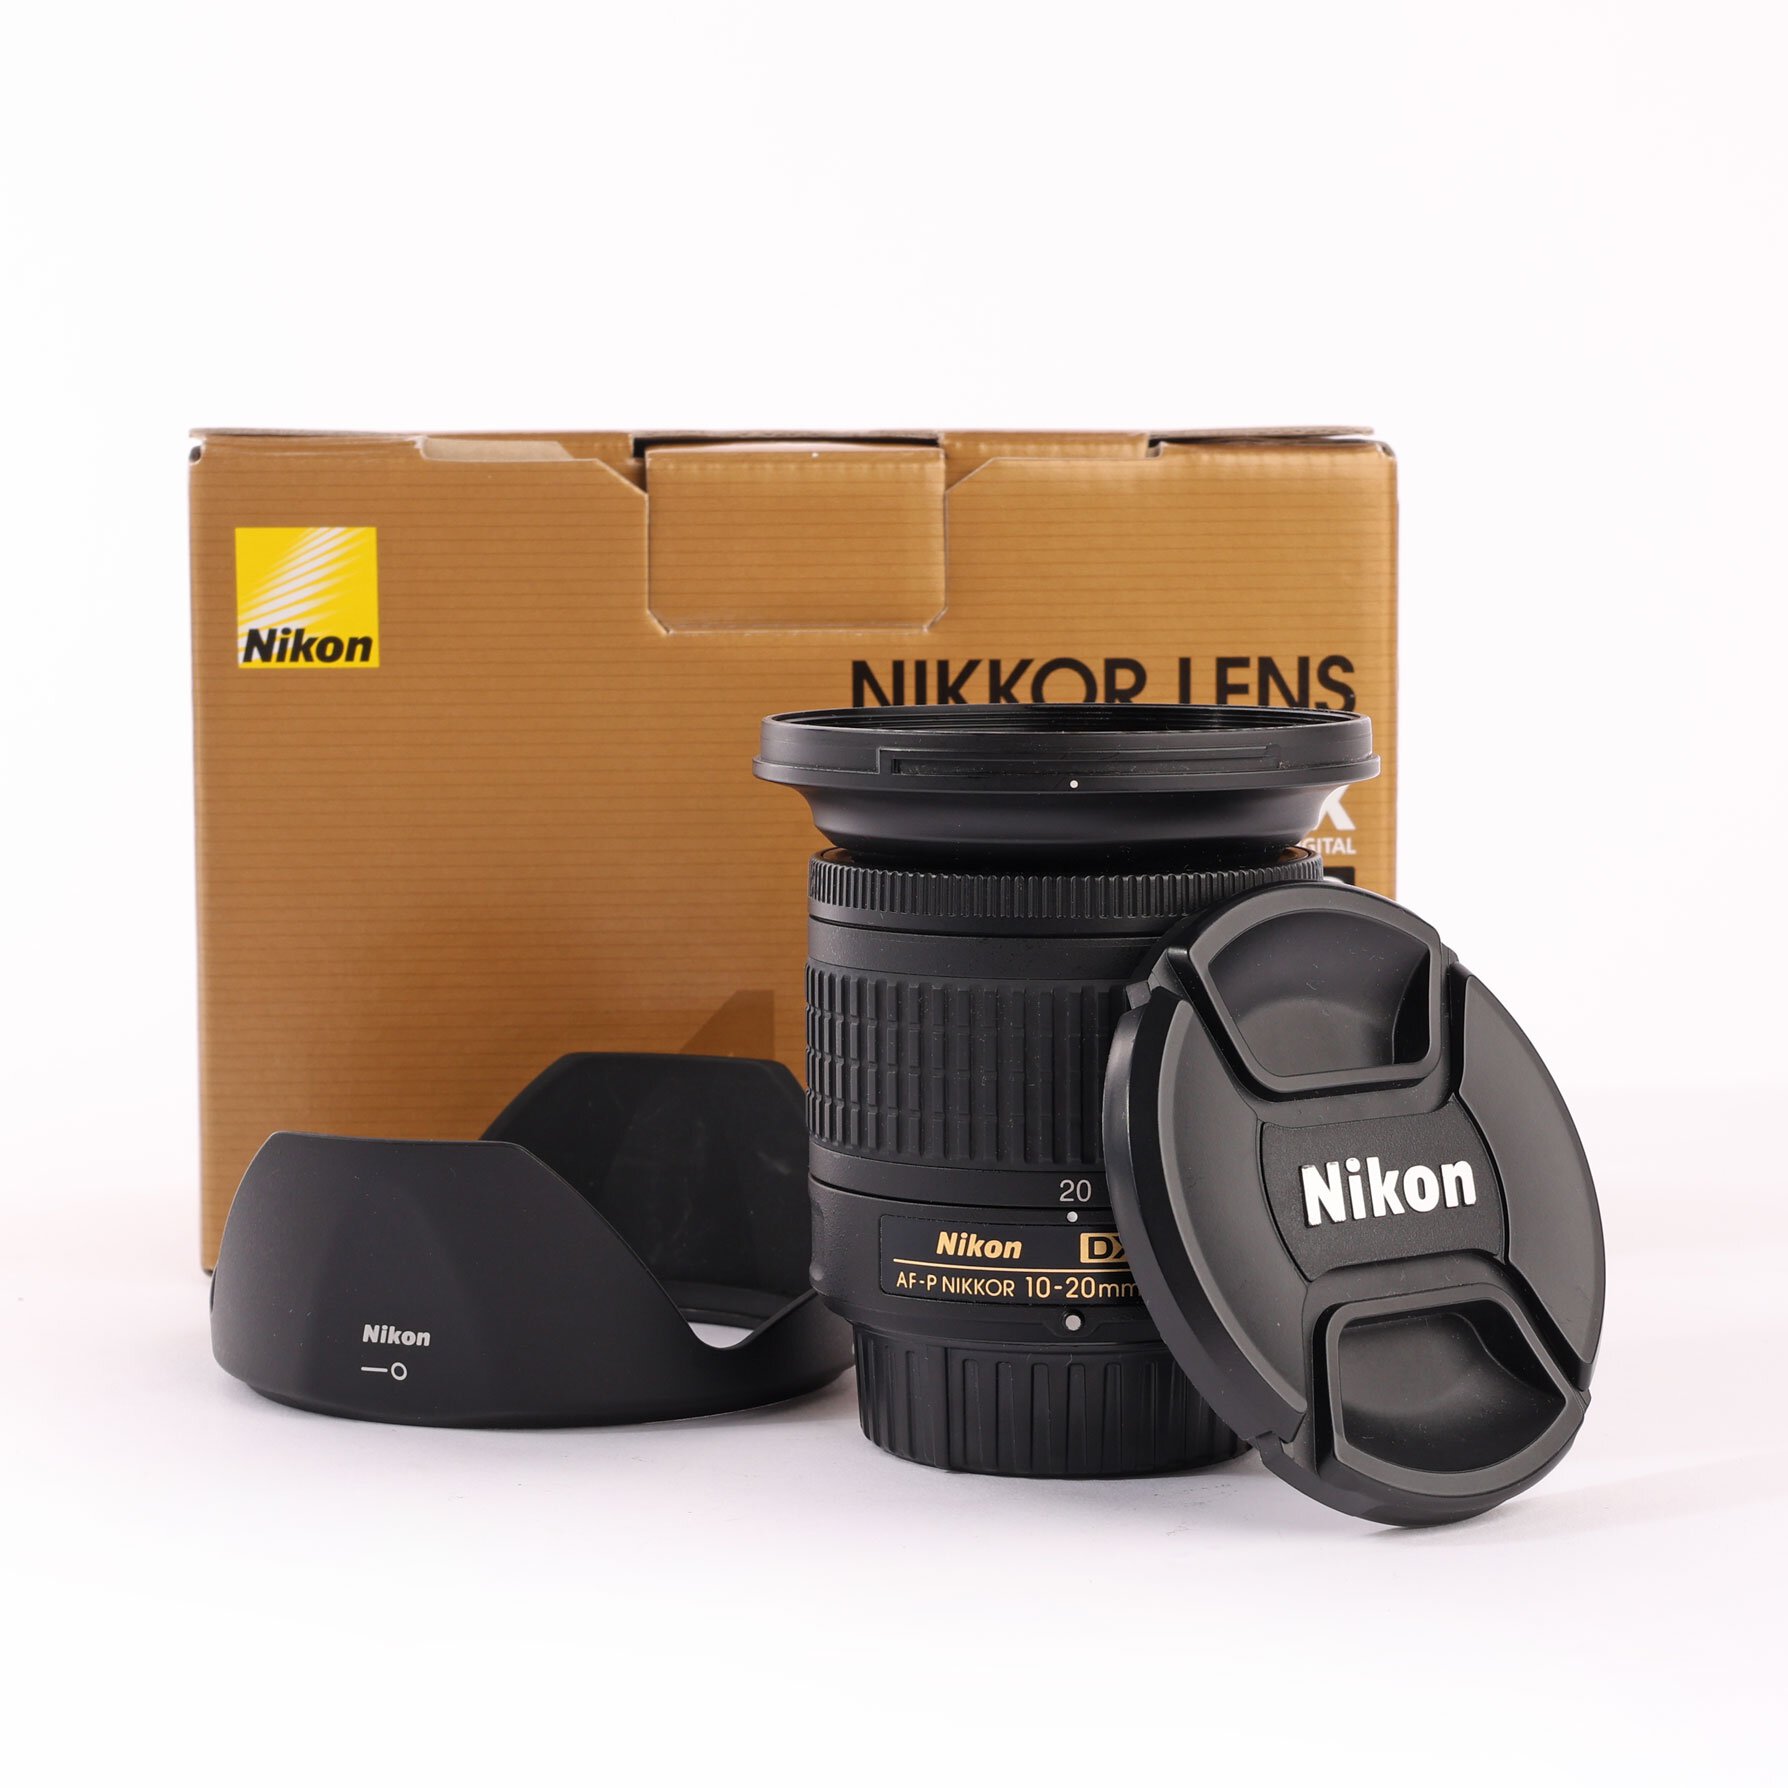 Nikon AFP Nikkor 4.5-5.6/10-20mm G